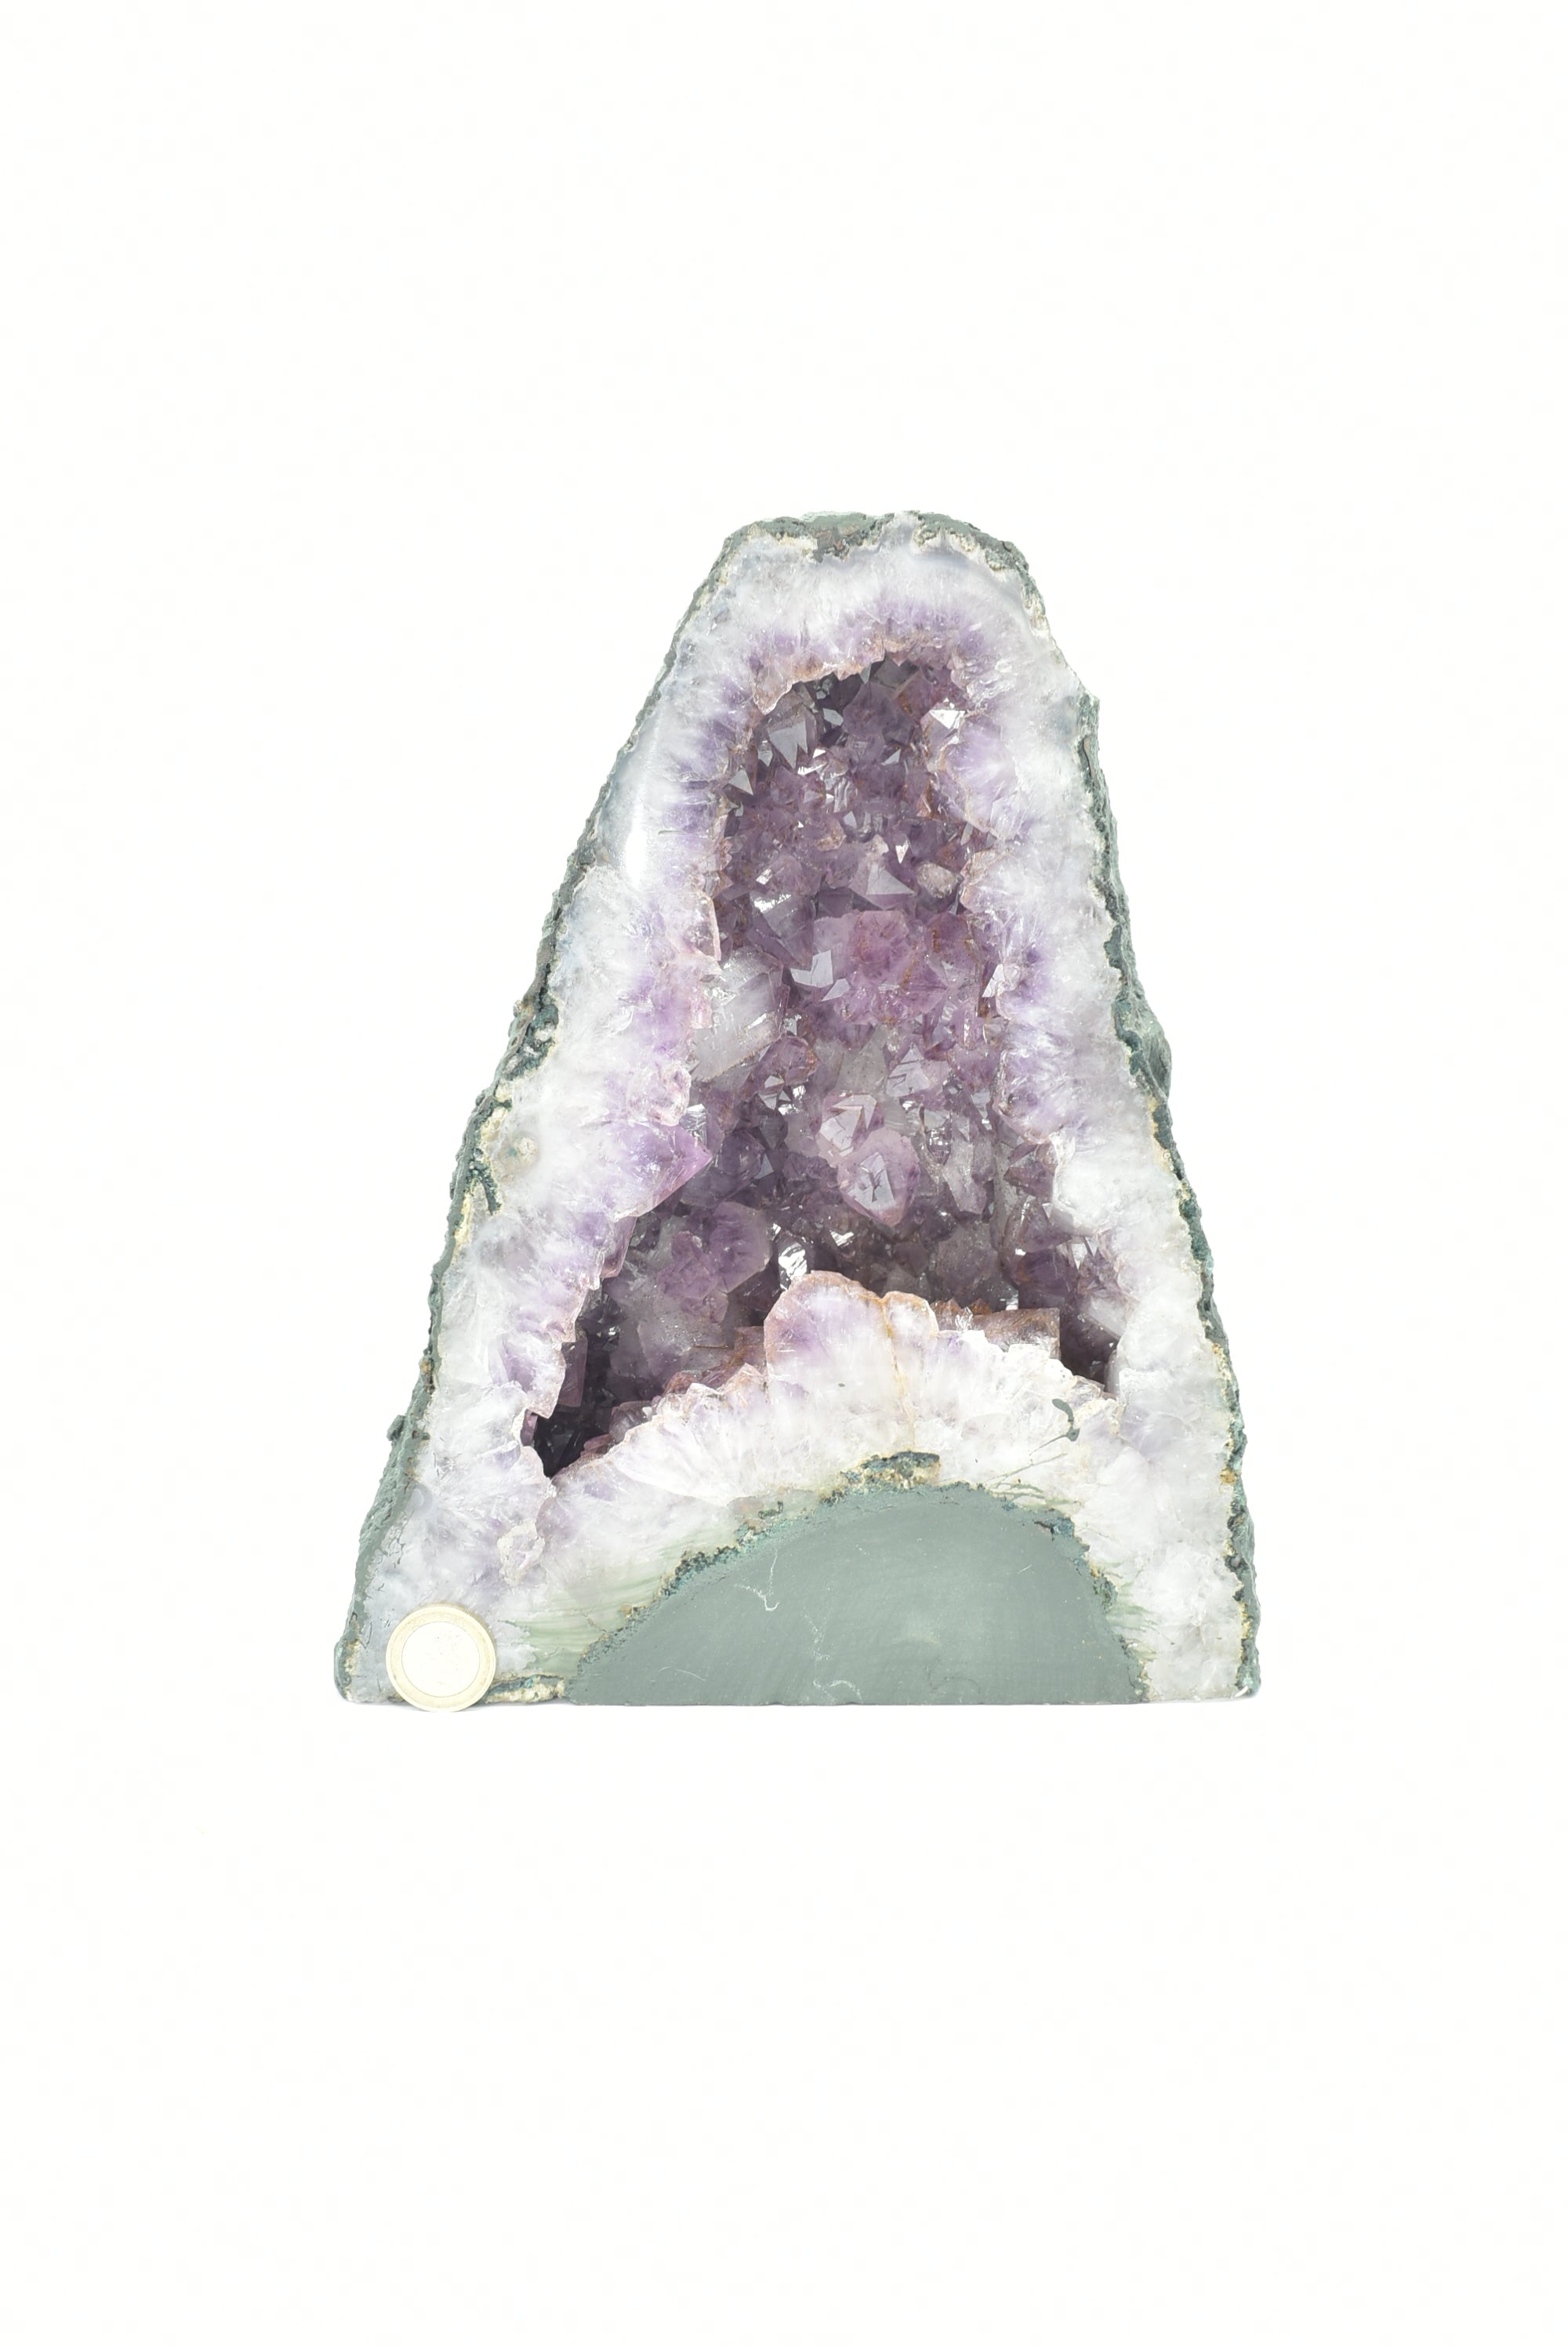 Amethyst Geode 7.4 Kg